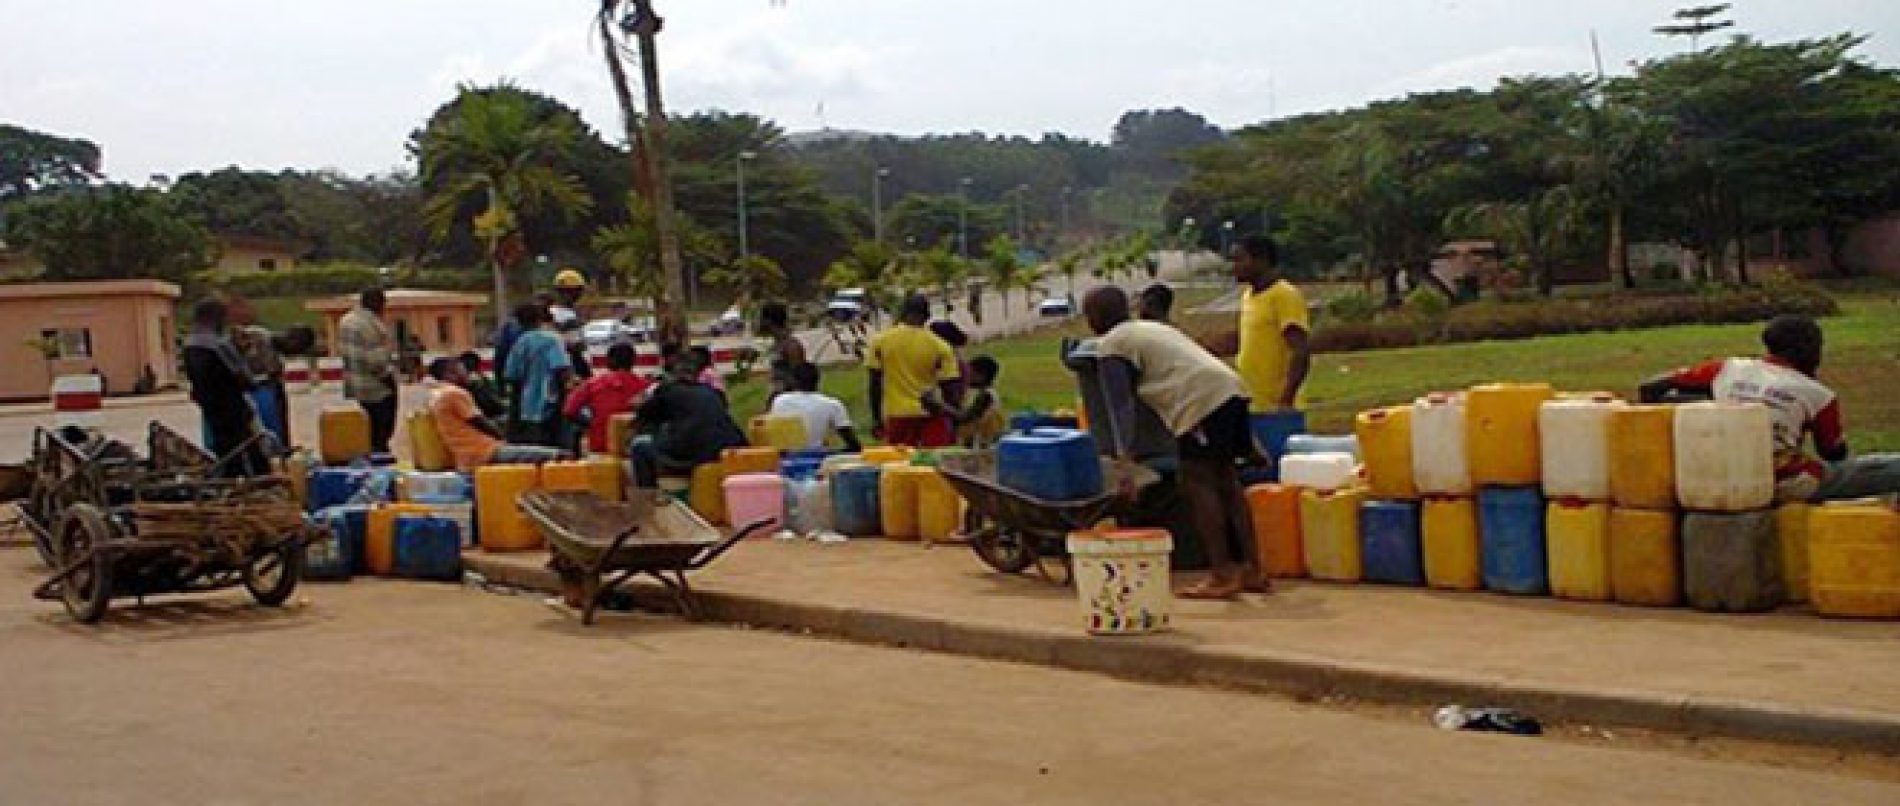 Mfou n’étanche pas la soif de Yaoundé